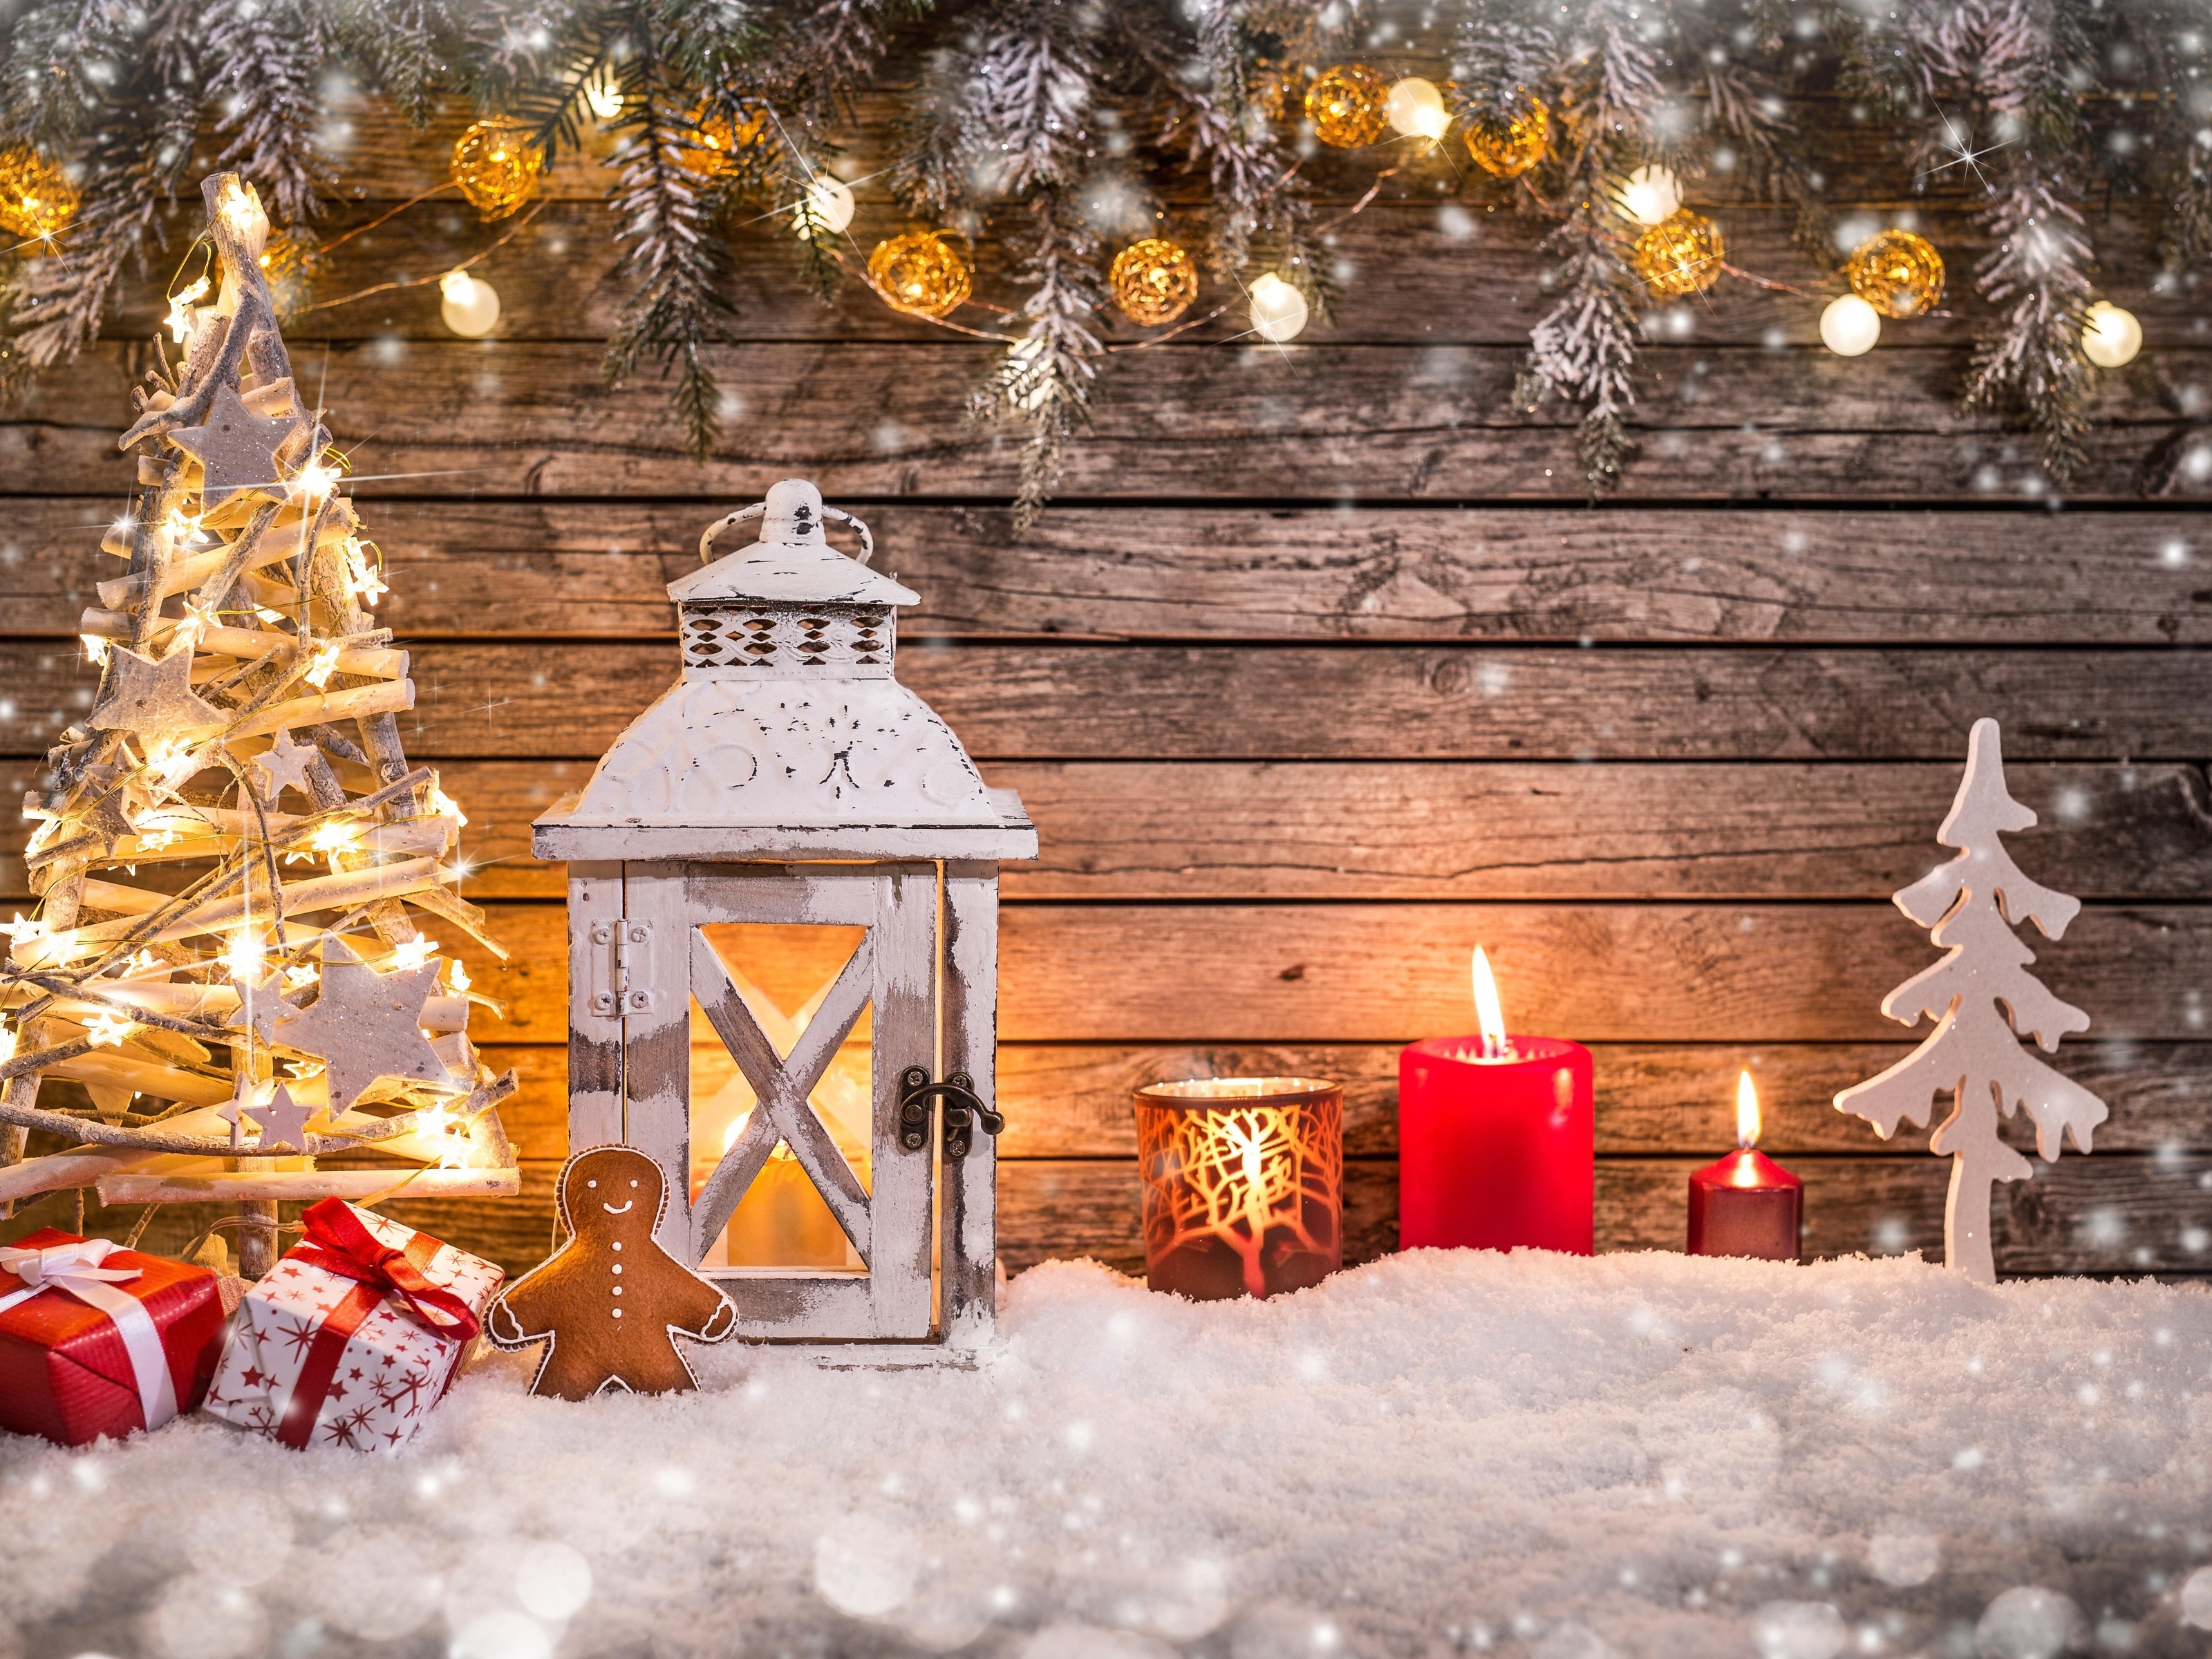 Картинка: Новый год, елка, подарки, украшение, фонарь, свечи